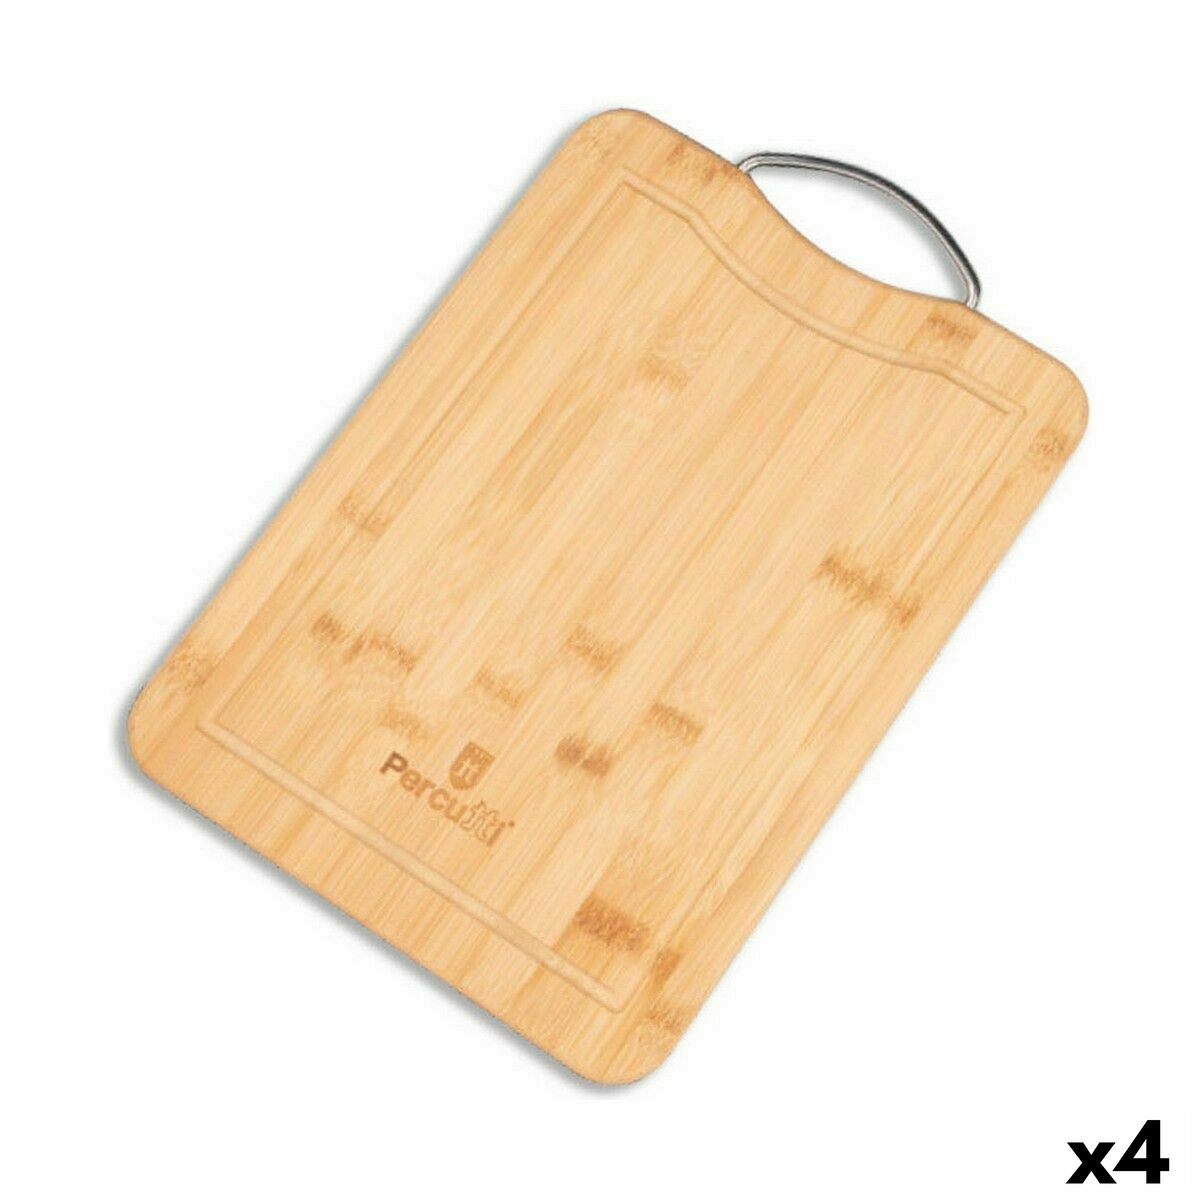 Cutting board Percutti Percutti 32,5 x 25 x 1,5 cm Brown Silver Bamboo (4 Units)